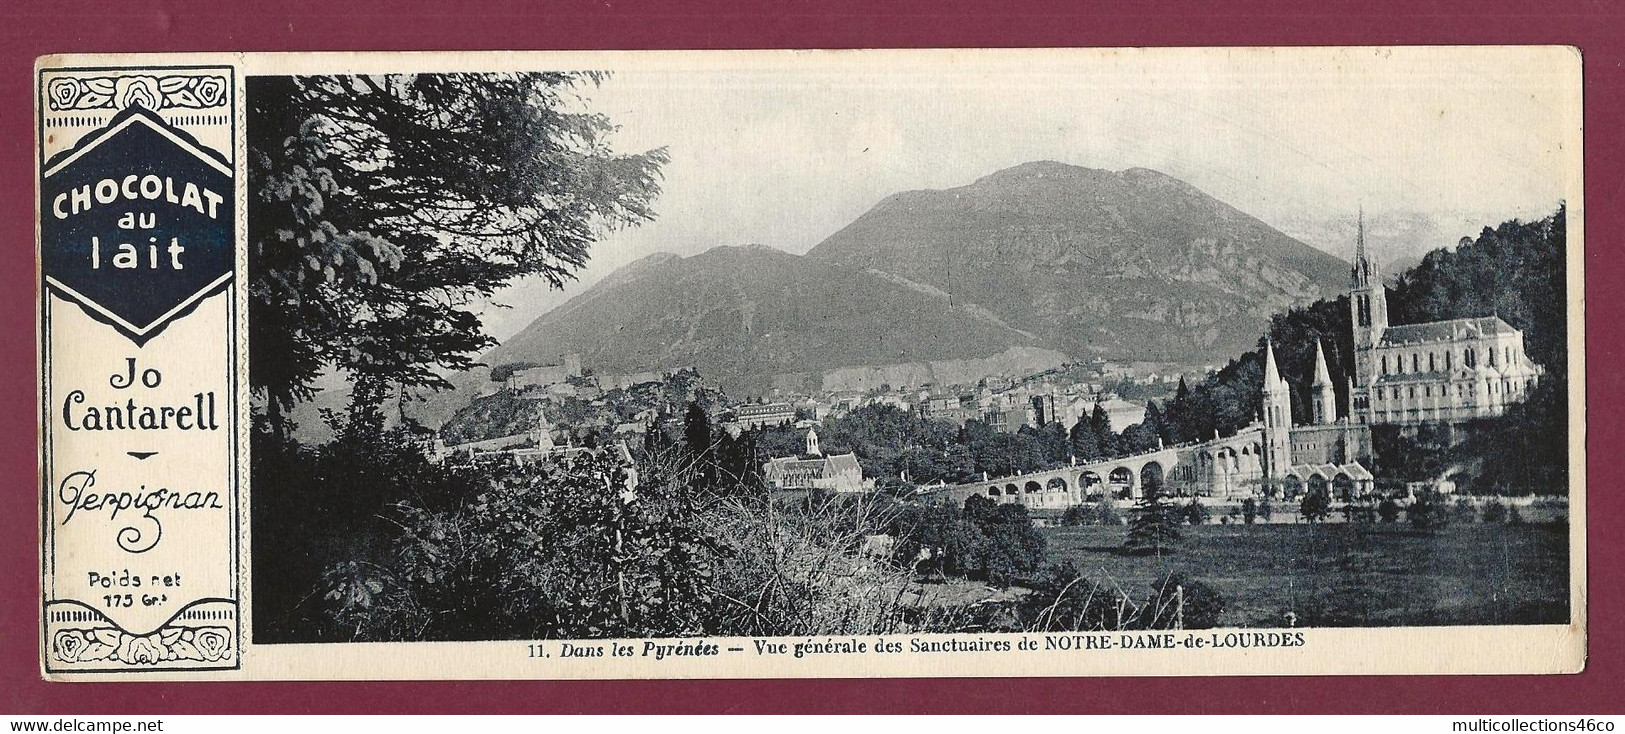 170222A - PUBLICITE CHOCOLAT AU LAIT JO CANTARELL PERPIGNAN - N°11 Pyrénées Sanctuaire NOTRE DAME DE LOURDES - Chocolade